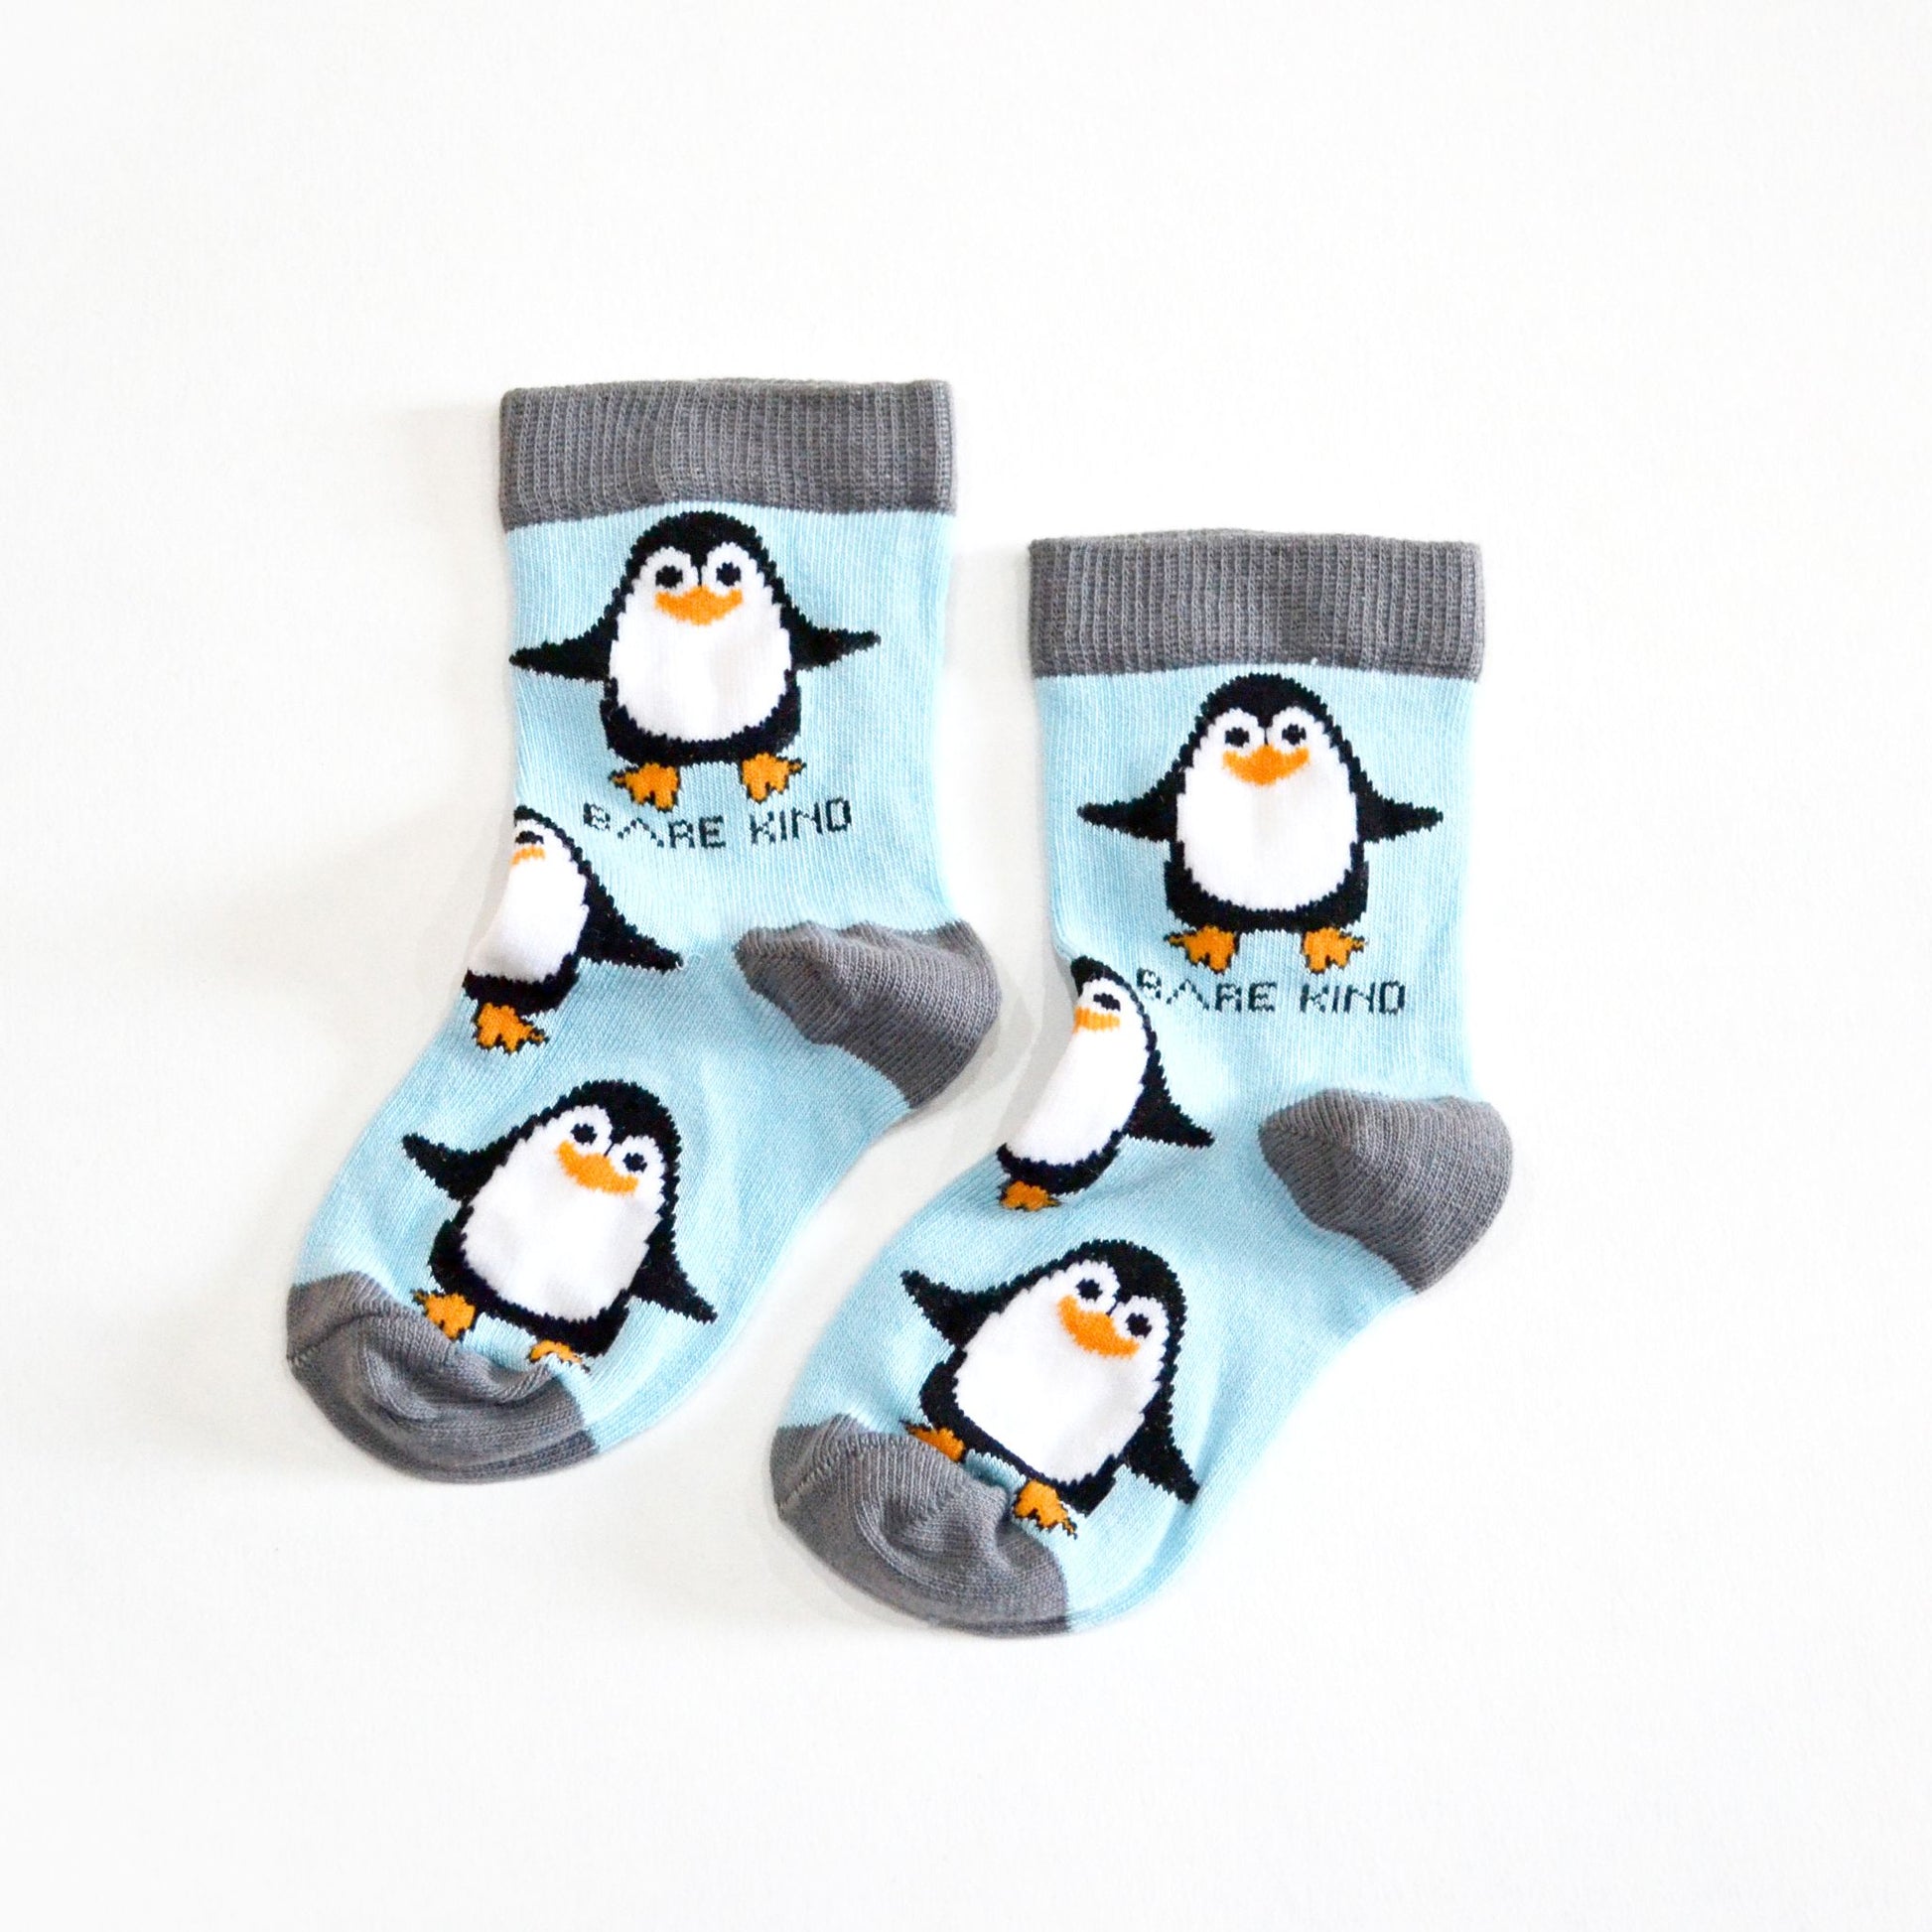 Socks Protecting Penguins  Bamboo Socks  3 Kids' Sizes - sock 6 - 9